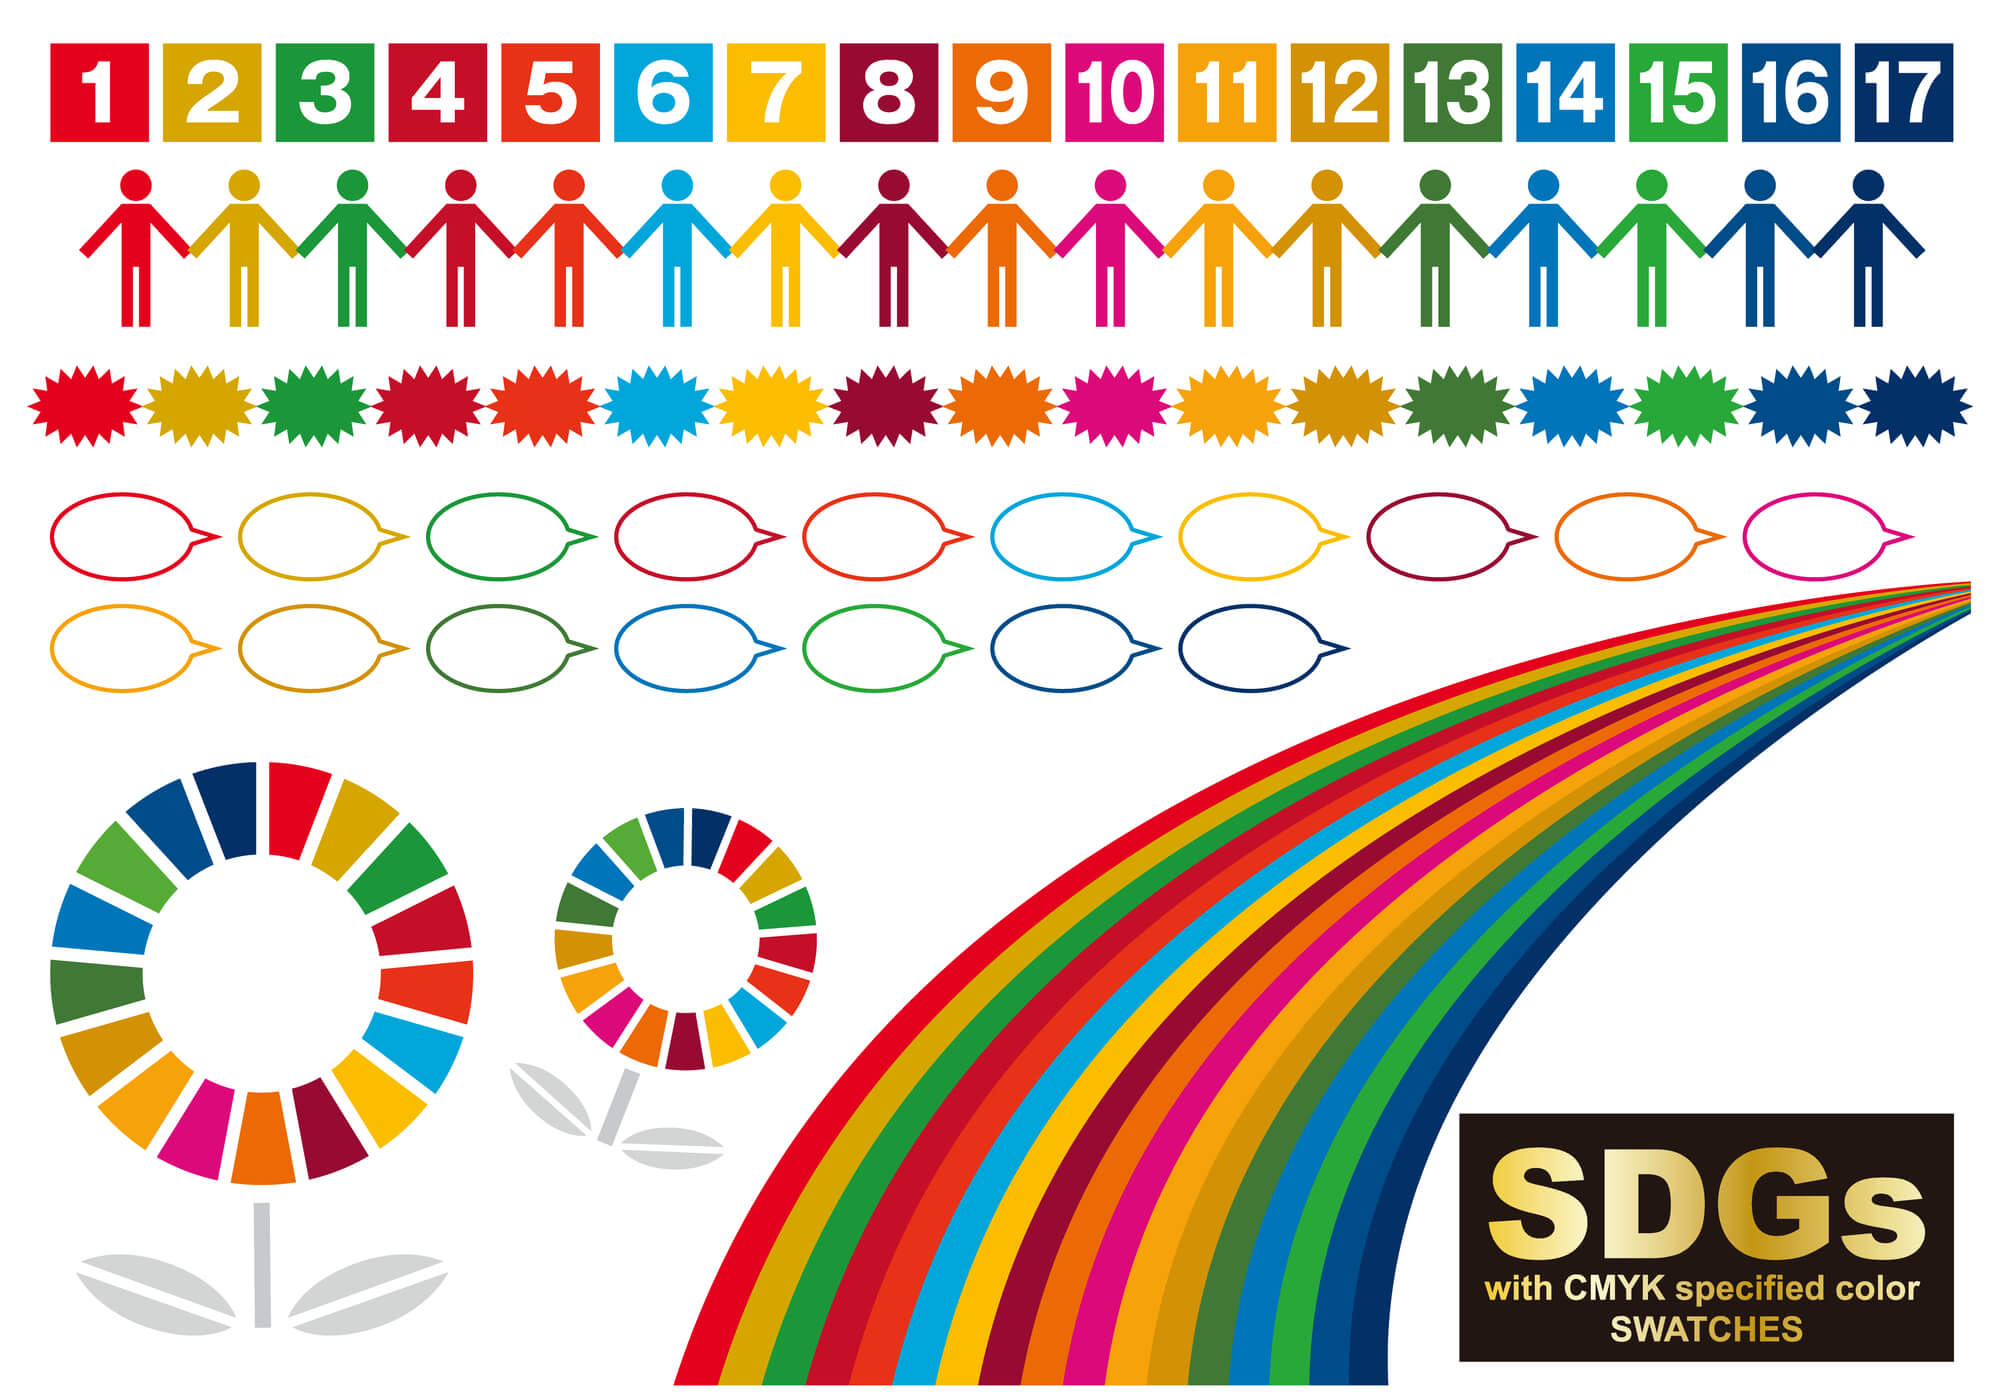 SDGsのカラフルなイメージ画像